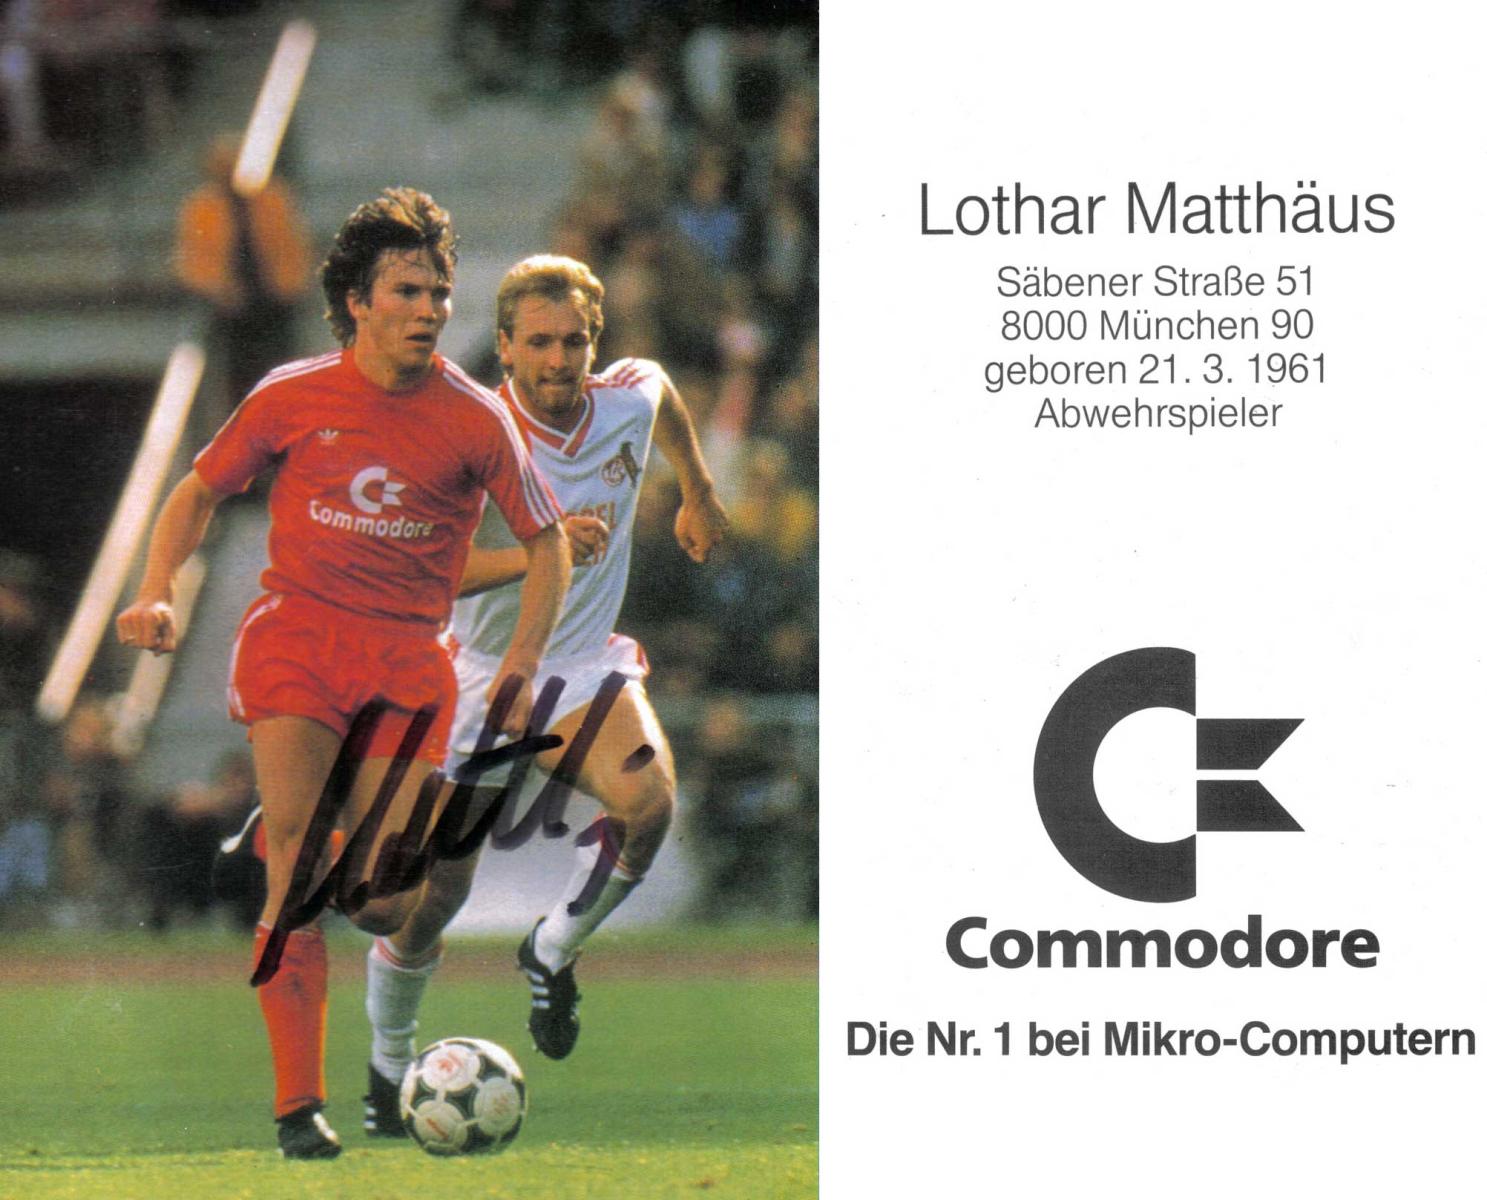 Commodore Soccer